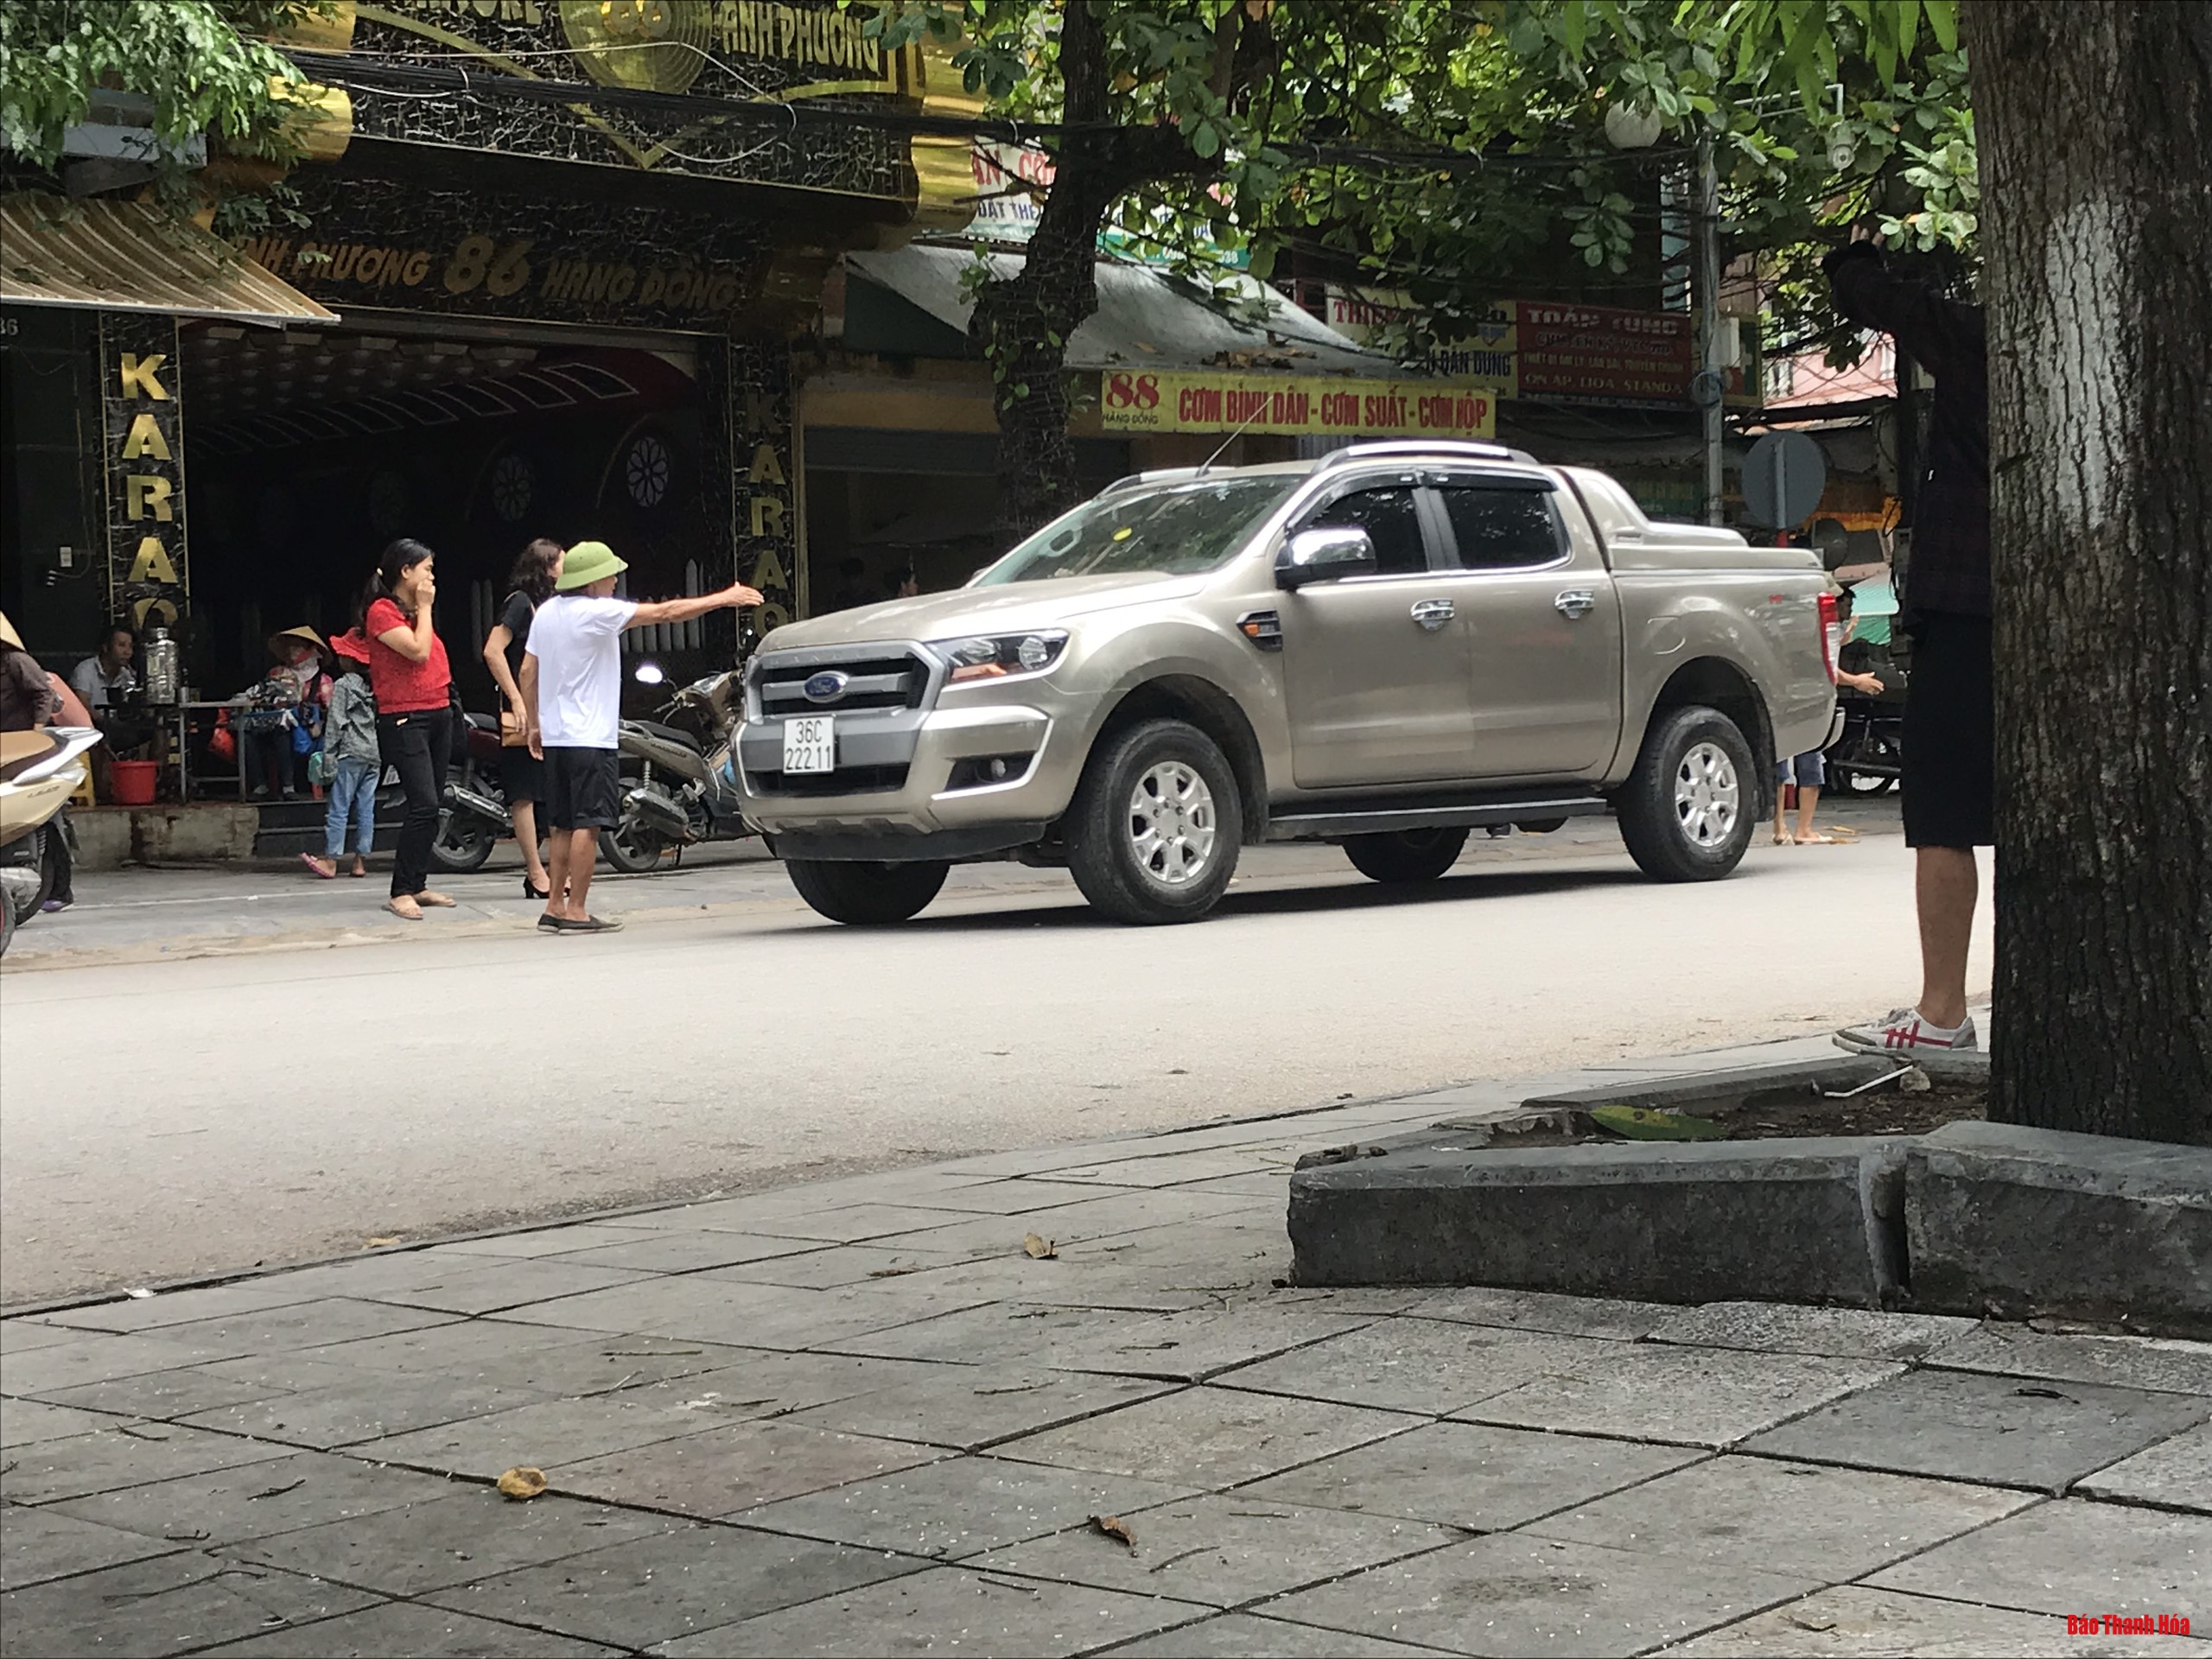 Cần nhanh chóng dẹp nạn lôi kéo khách của các quán cơm trên phố Hàng Đồng